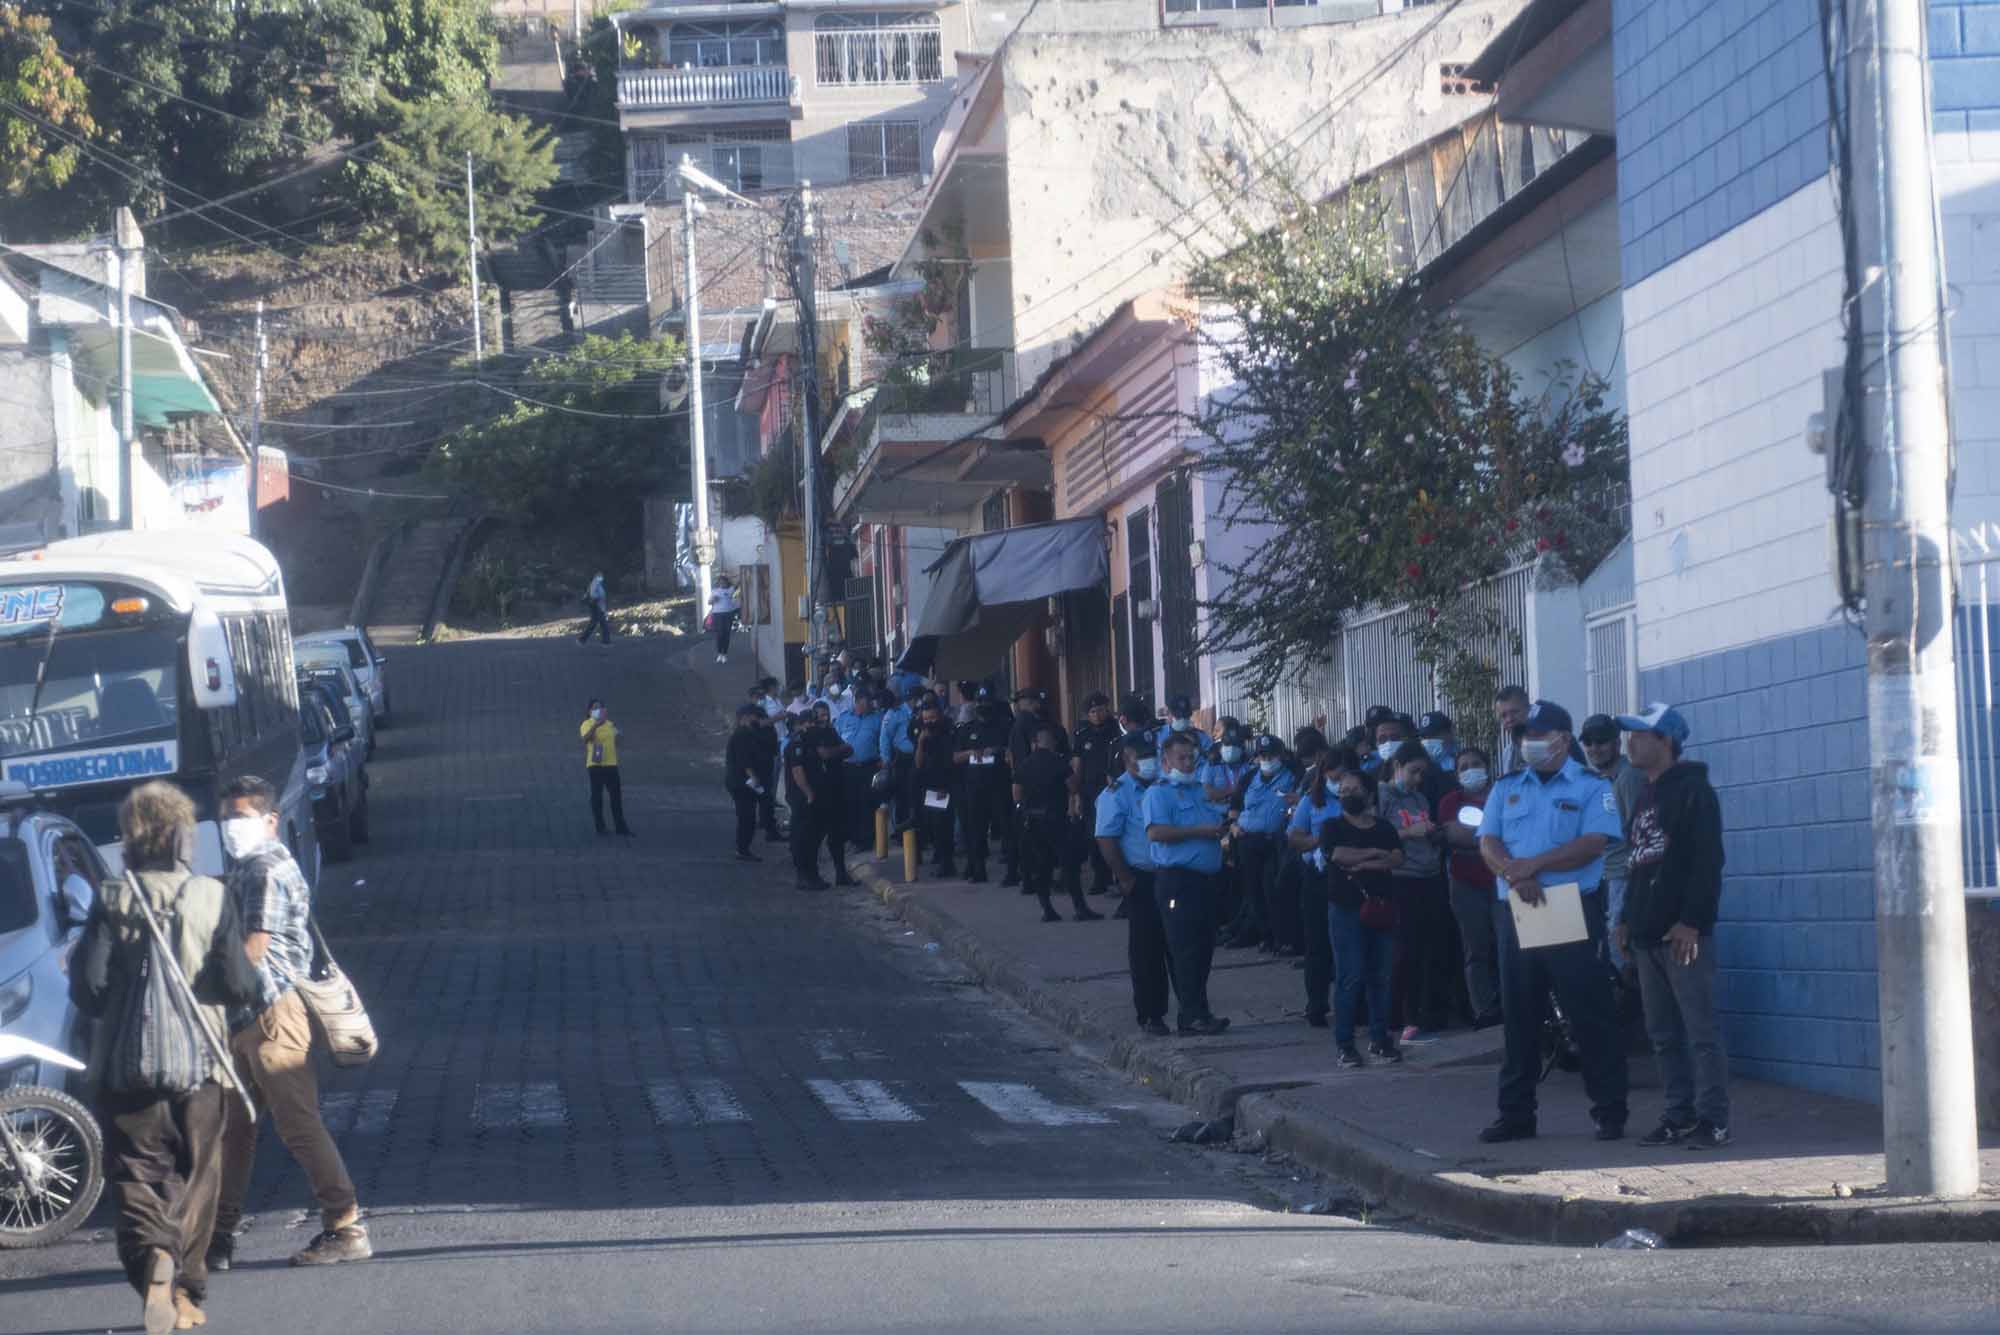 Las elecciones de 2021, en las que Ortega y Murillo se reeligieron sin competencia, estuvieron marcadas por el abstencionismo ciudadano y la presencia policial. Foto: Divergentes.